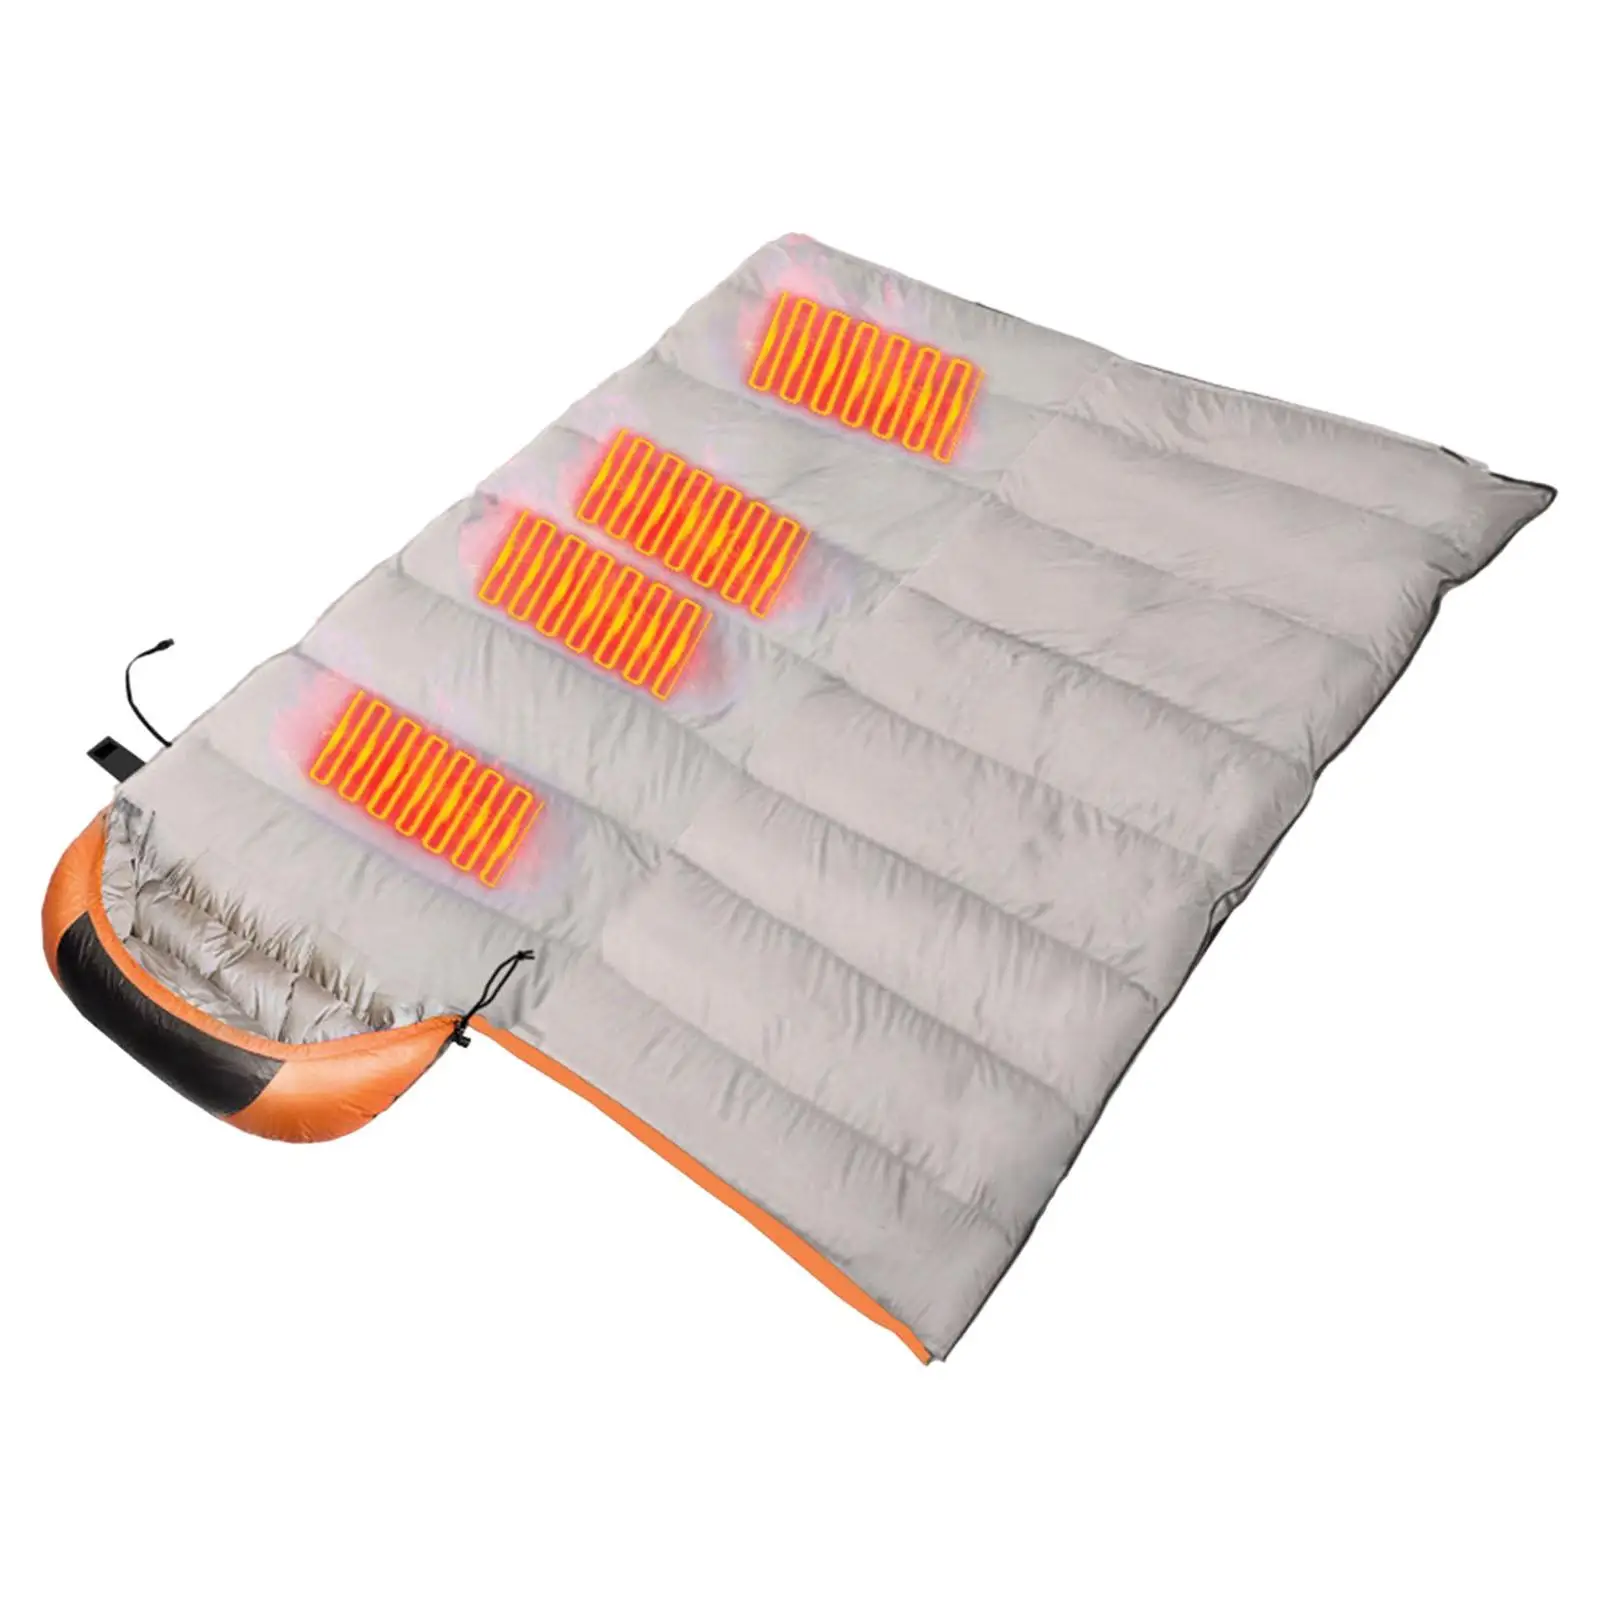 Compact Heated Sleeping Bag Soft USB Warm Winter Sleeping Bag